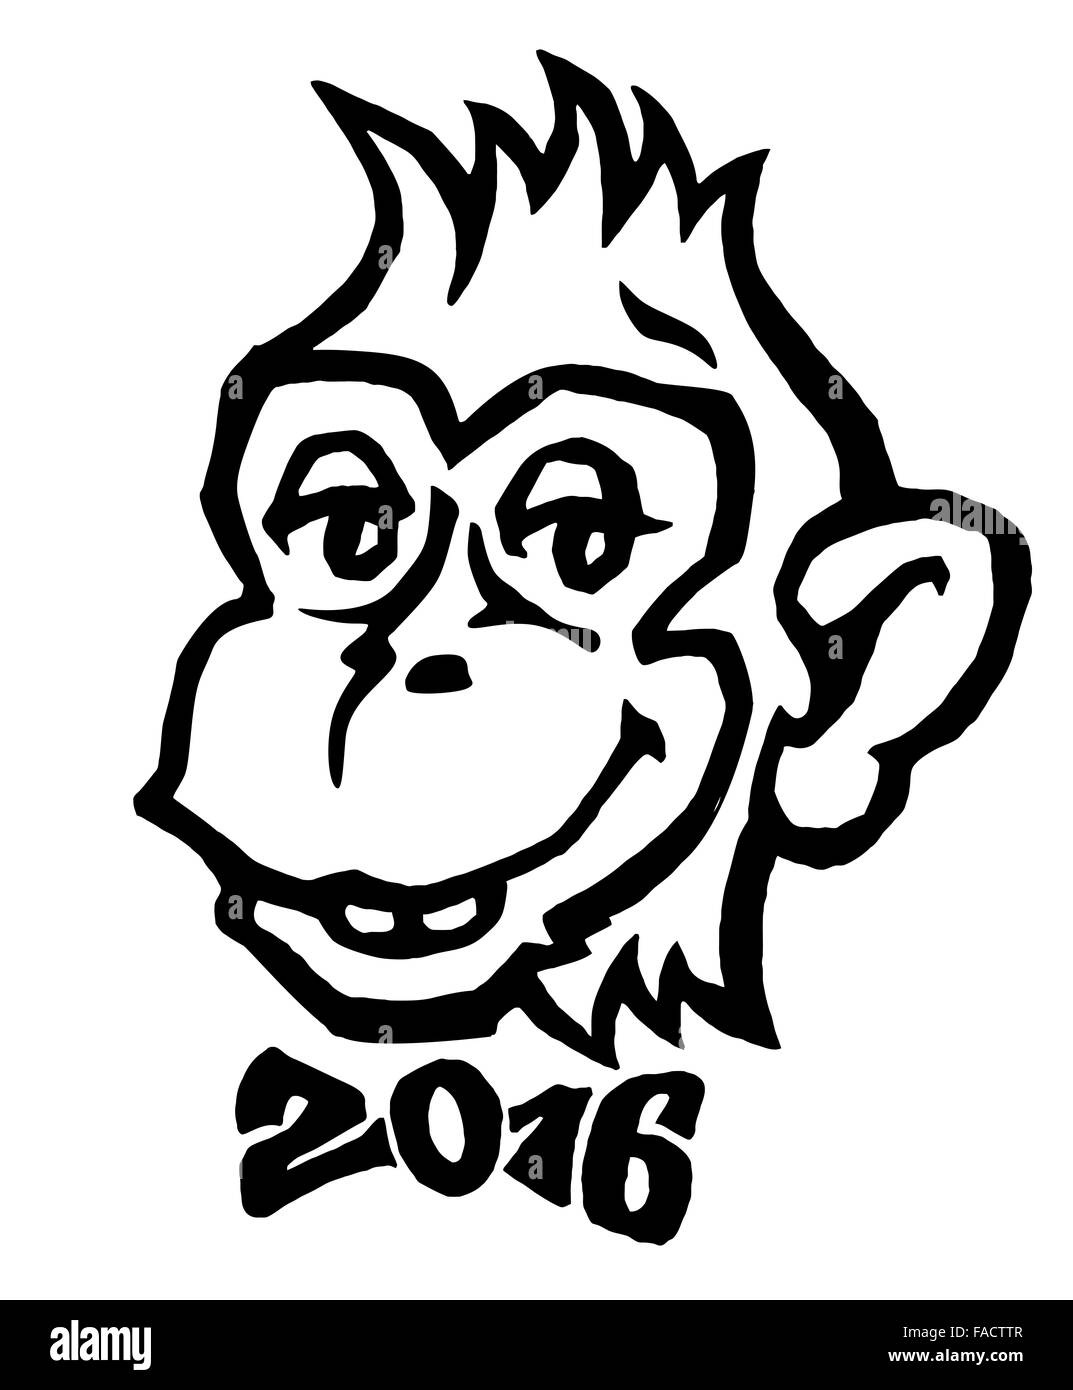 2016 - anno della scimmia. Scimmia sorridente con 2016 bow tie illustrazione vettoriale Foto Stock